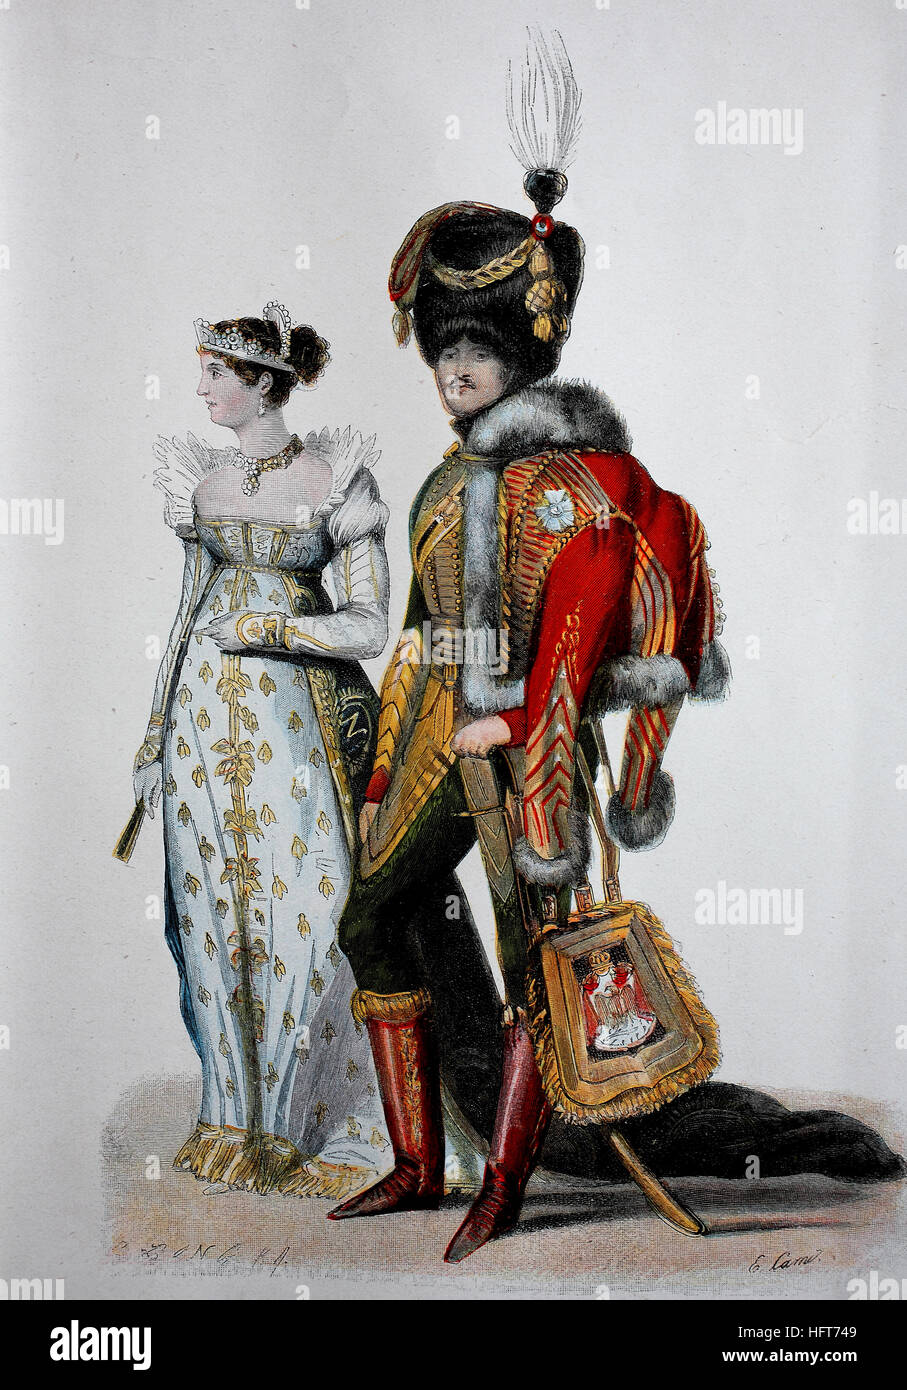 Die Empire Mode, Herrenmode und Mode, Gericht Kleid aus der Empire-Ära,  1807, Holzschnitt aus dem Jahr 1885, digital verbessert Stockfotografie -  Alamy